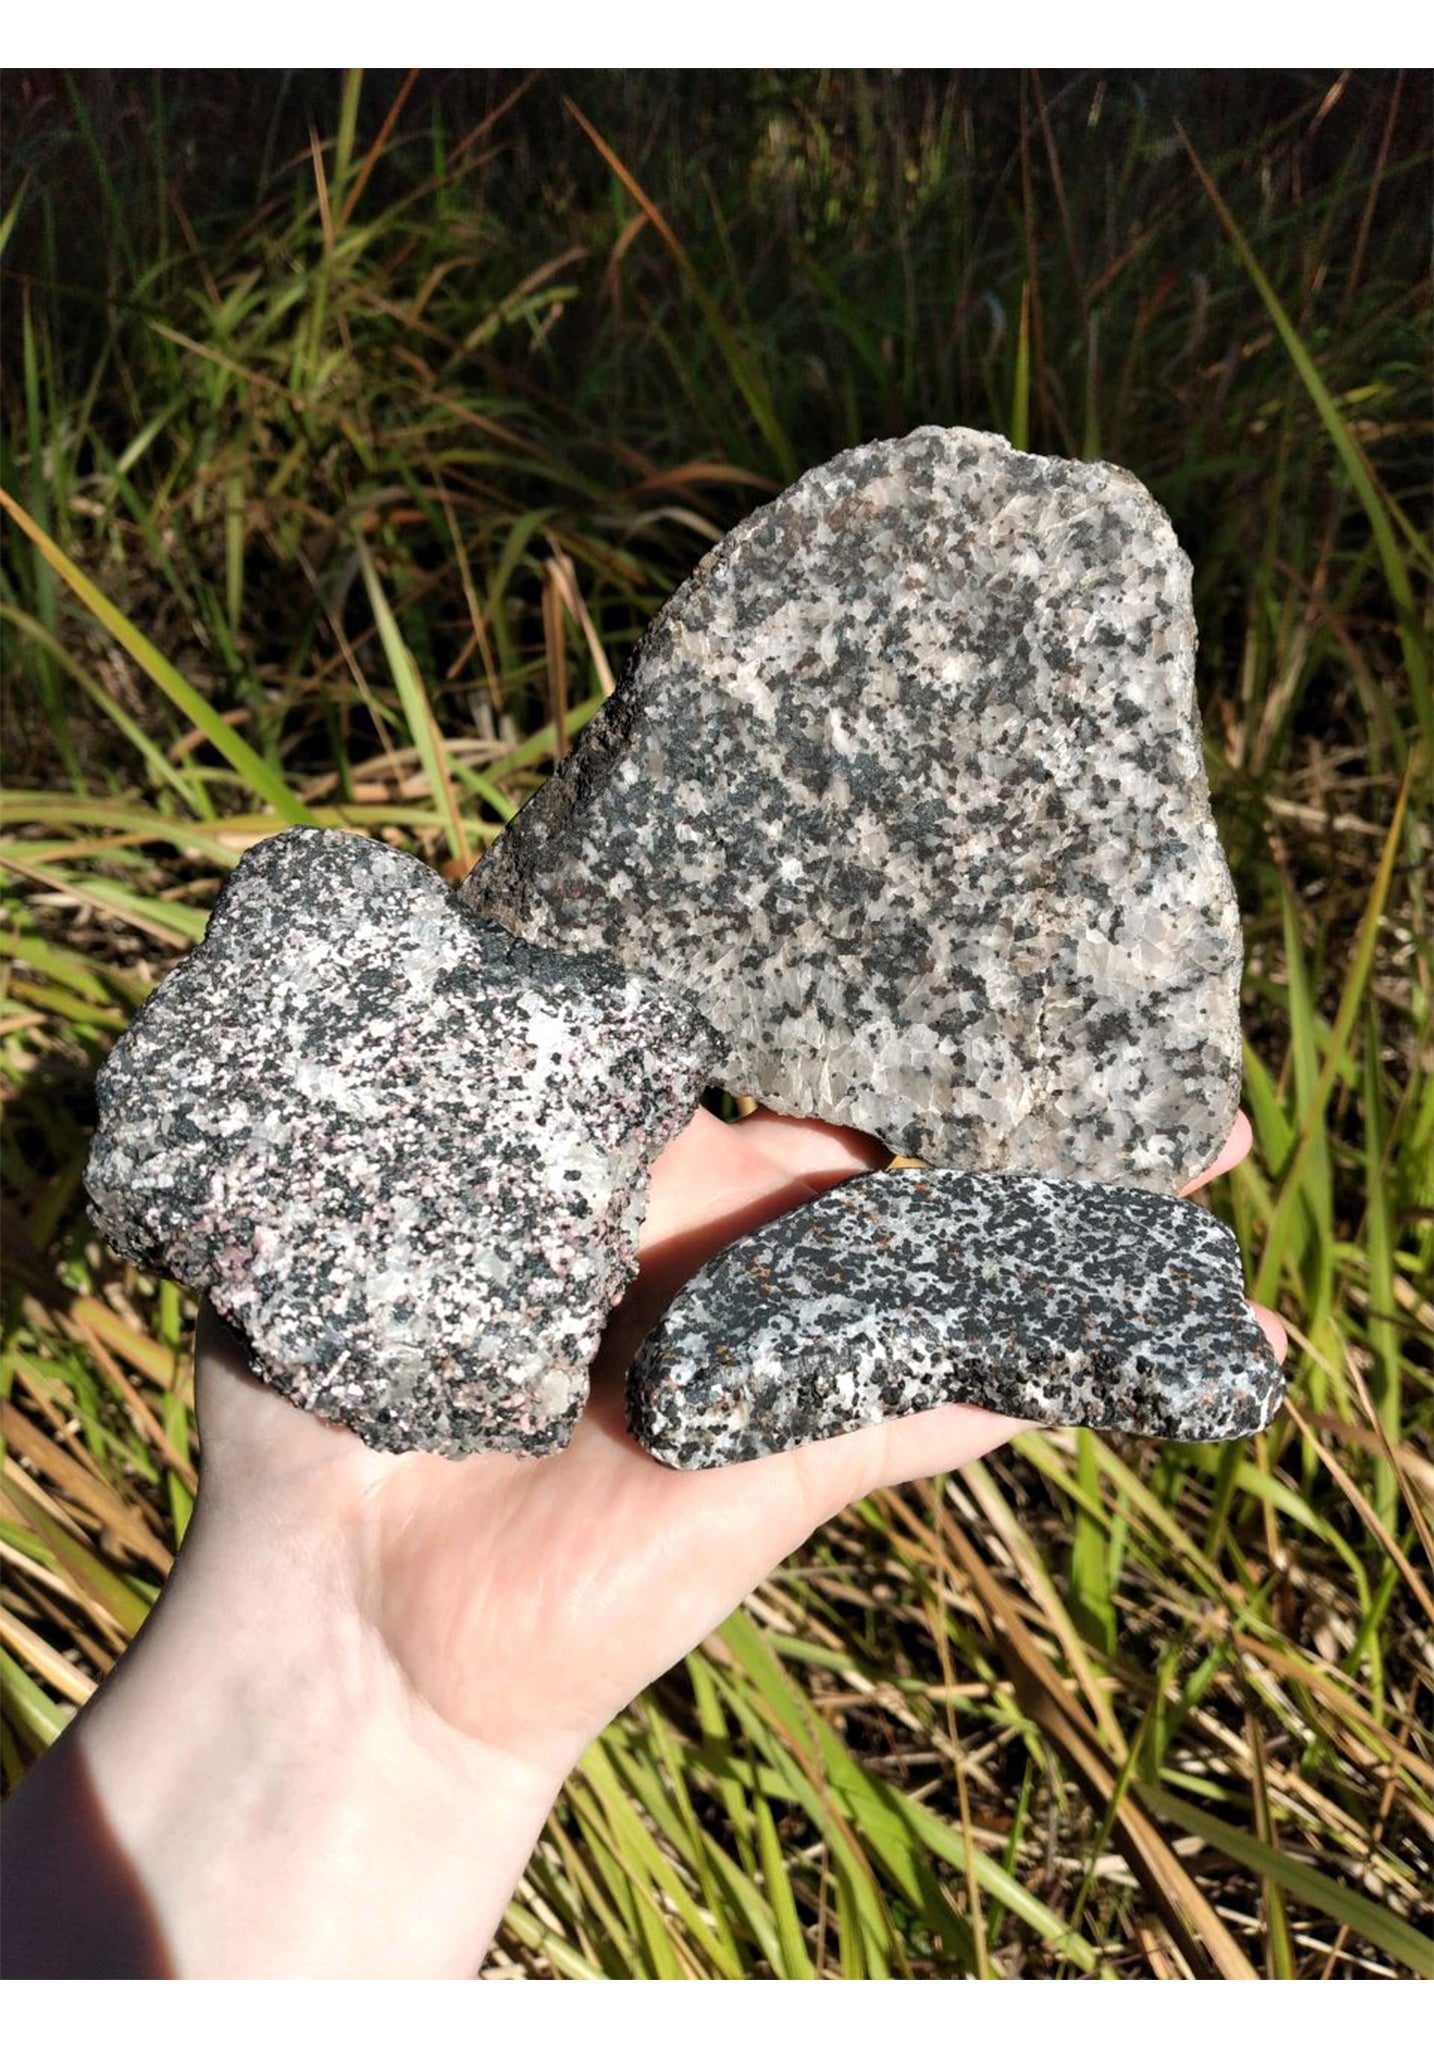 Franklin Willemite in Calcite Matrix Natural Gemstone Slab